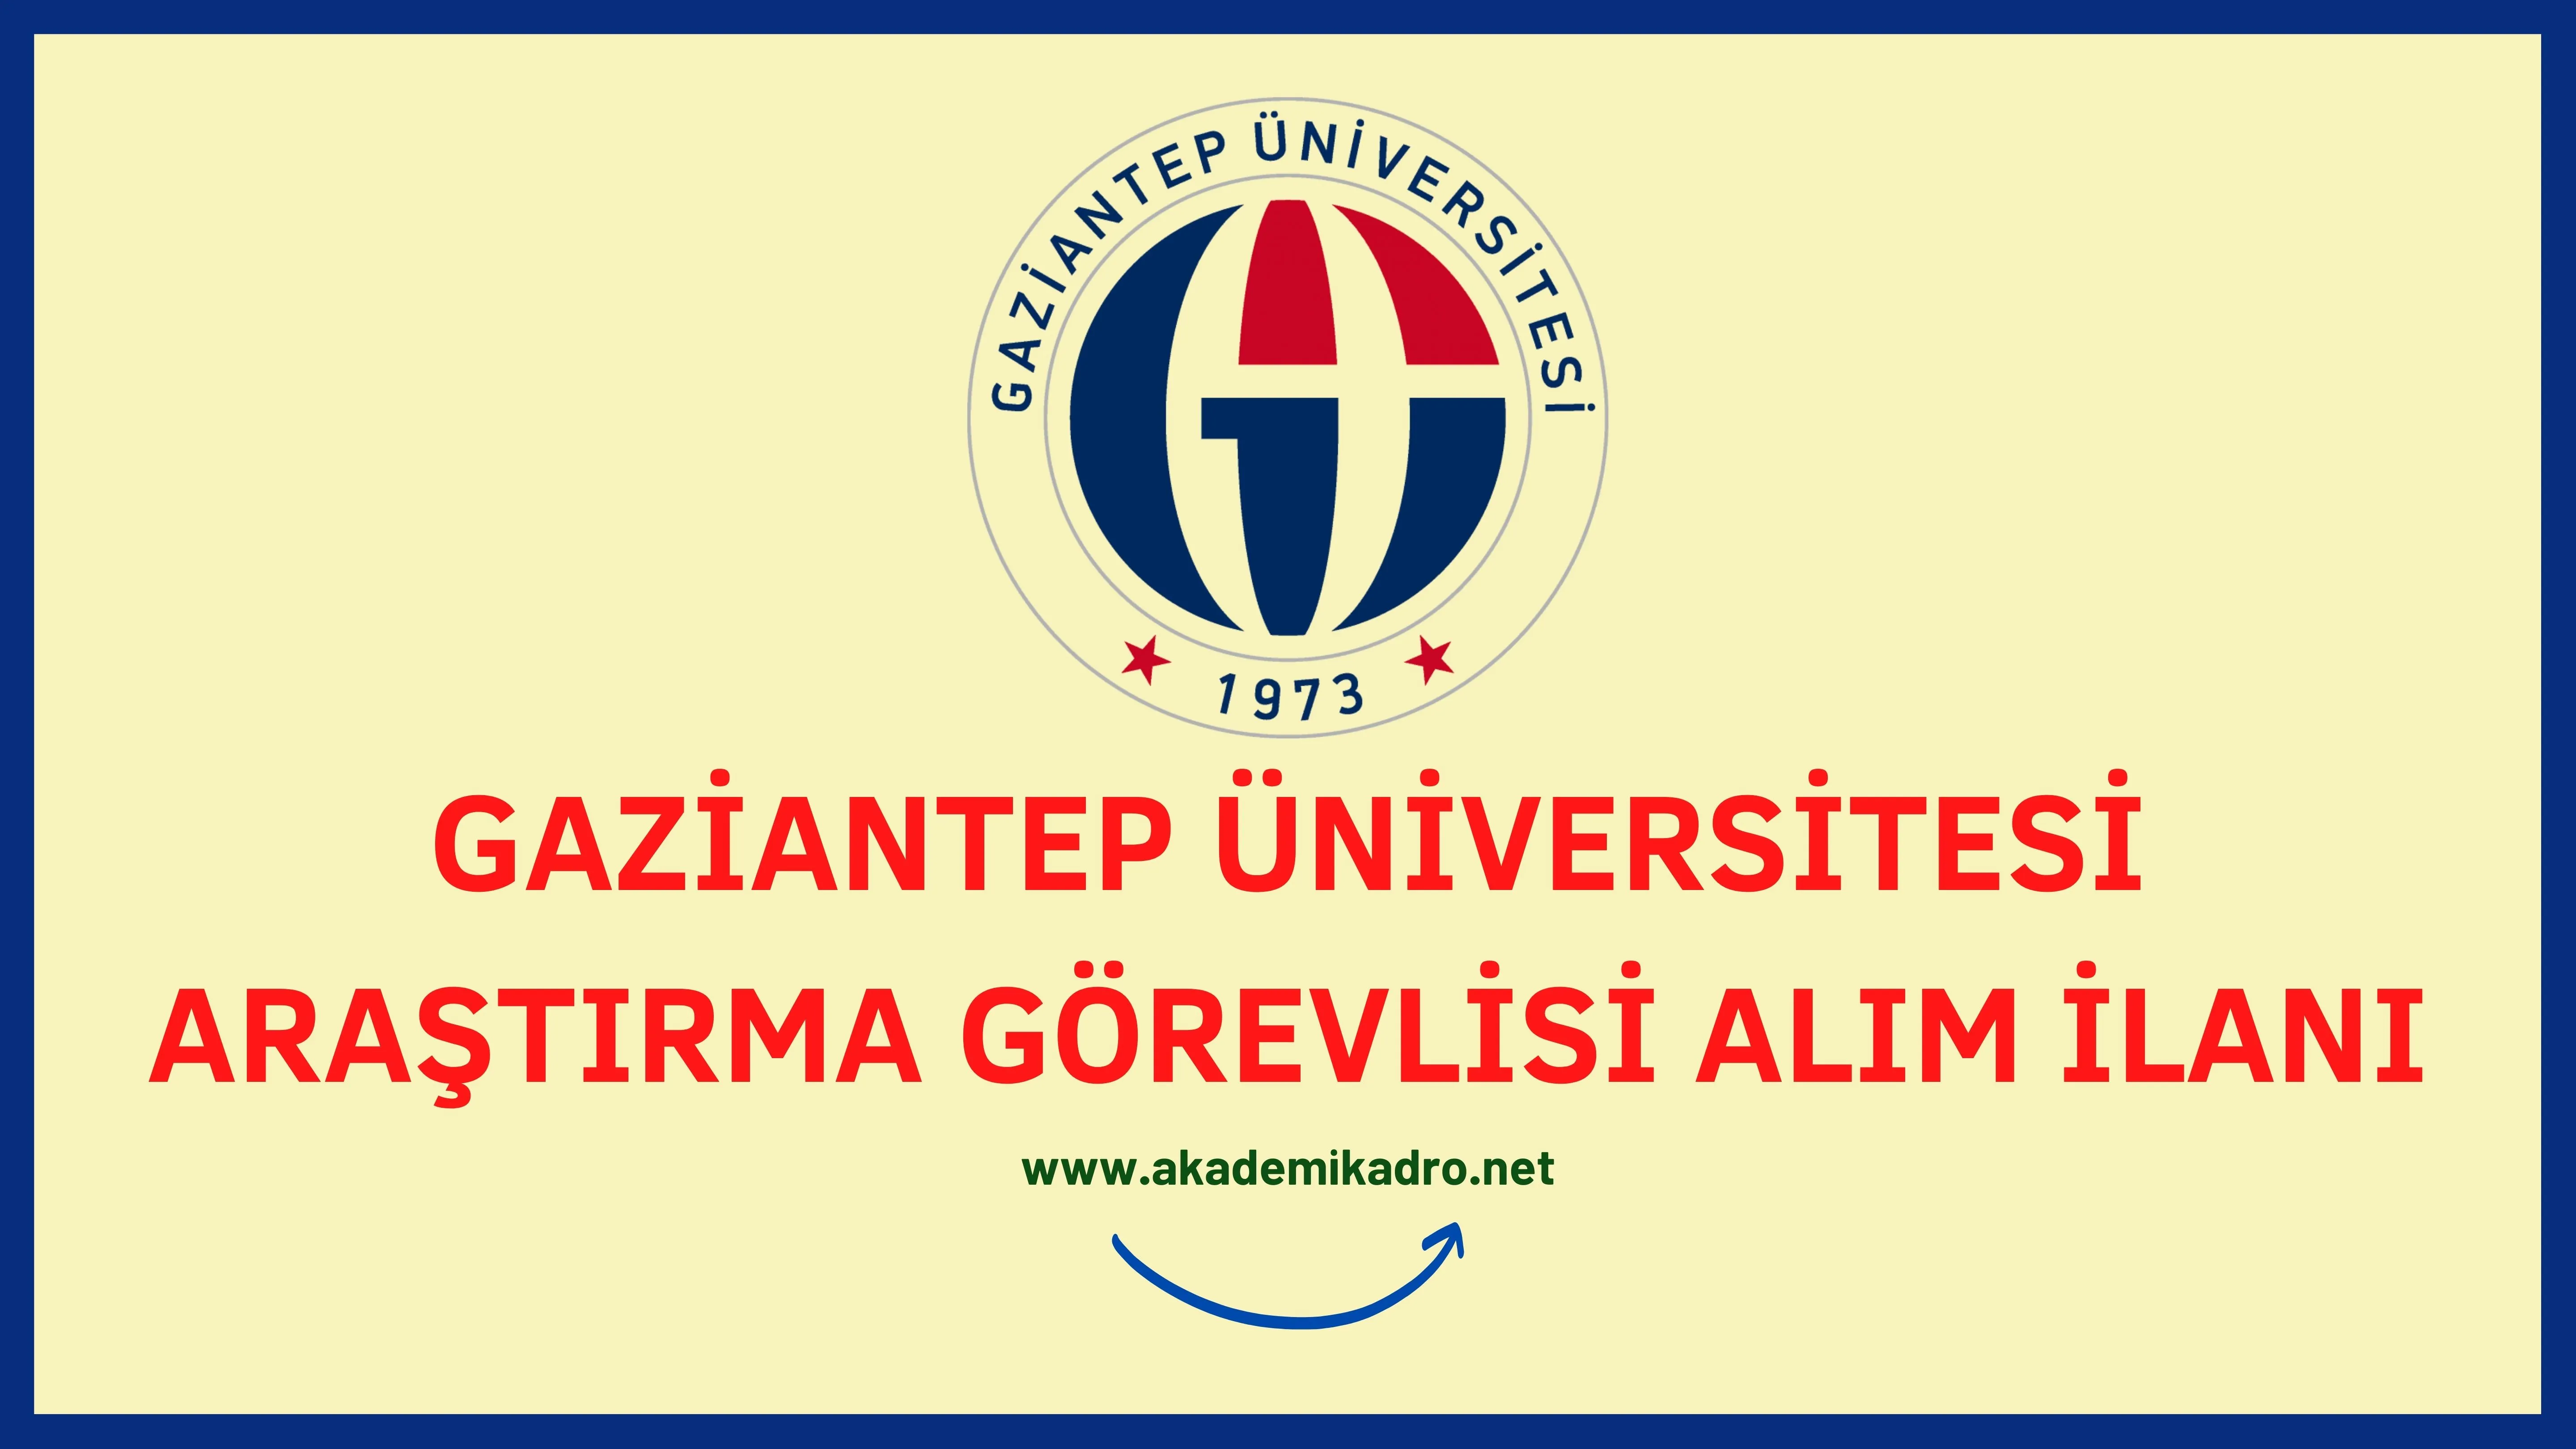 Gaziantep Üniversitesi 4 araştırma görevlisi alacak.